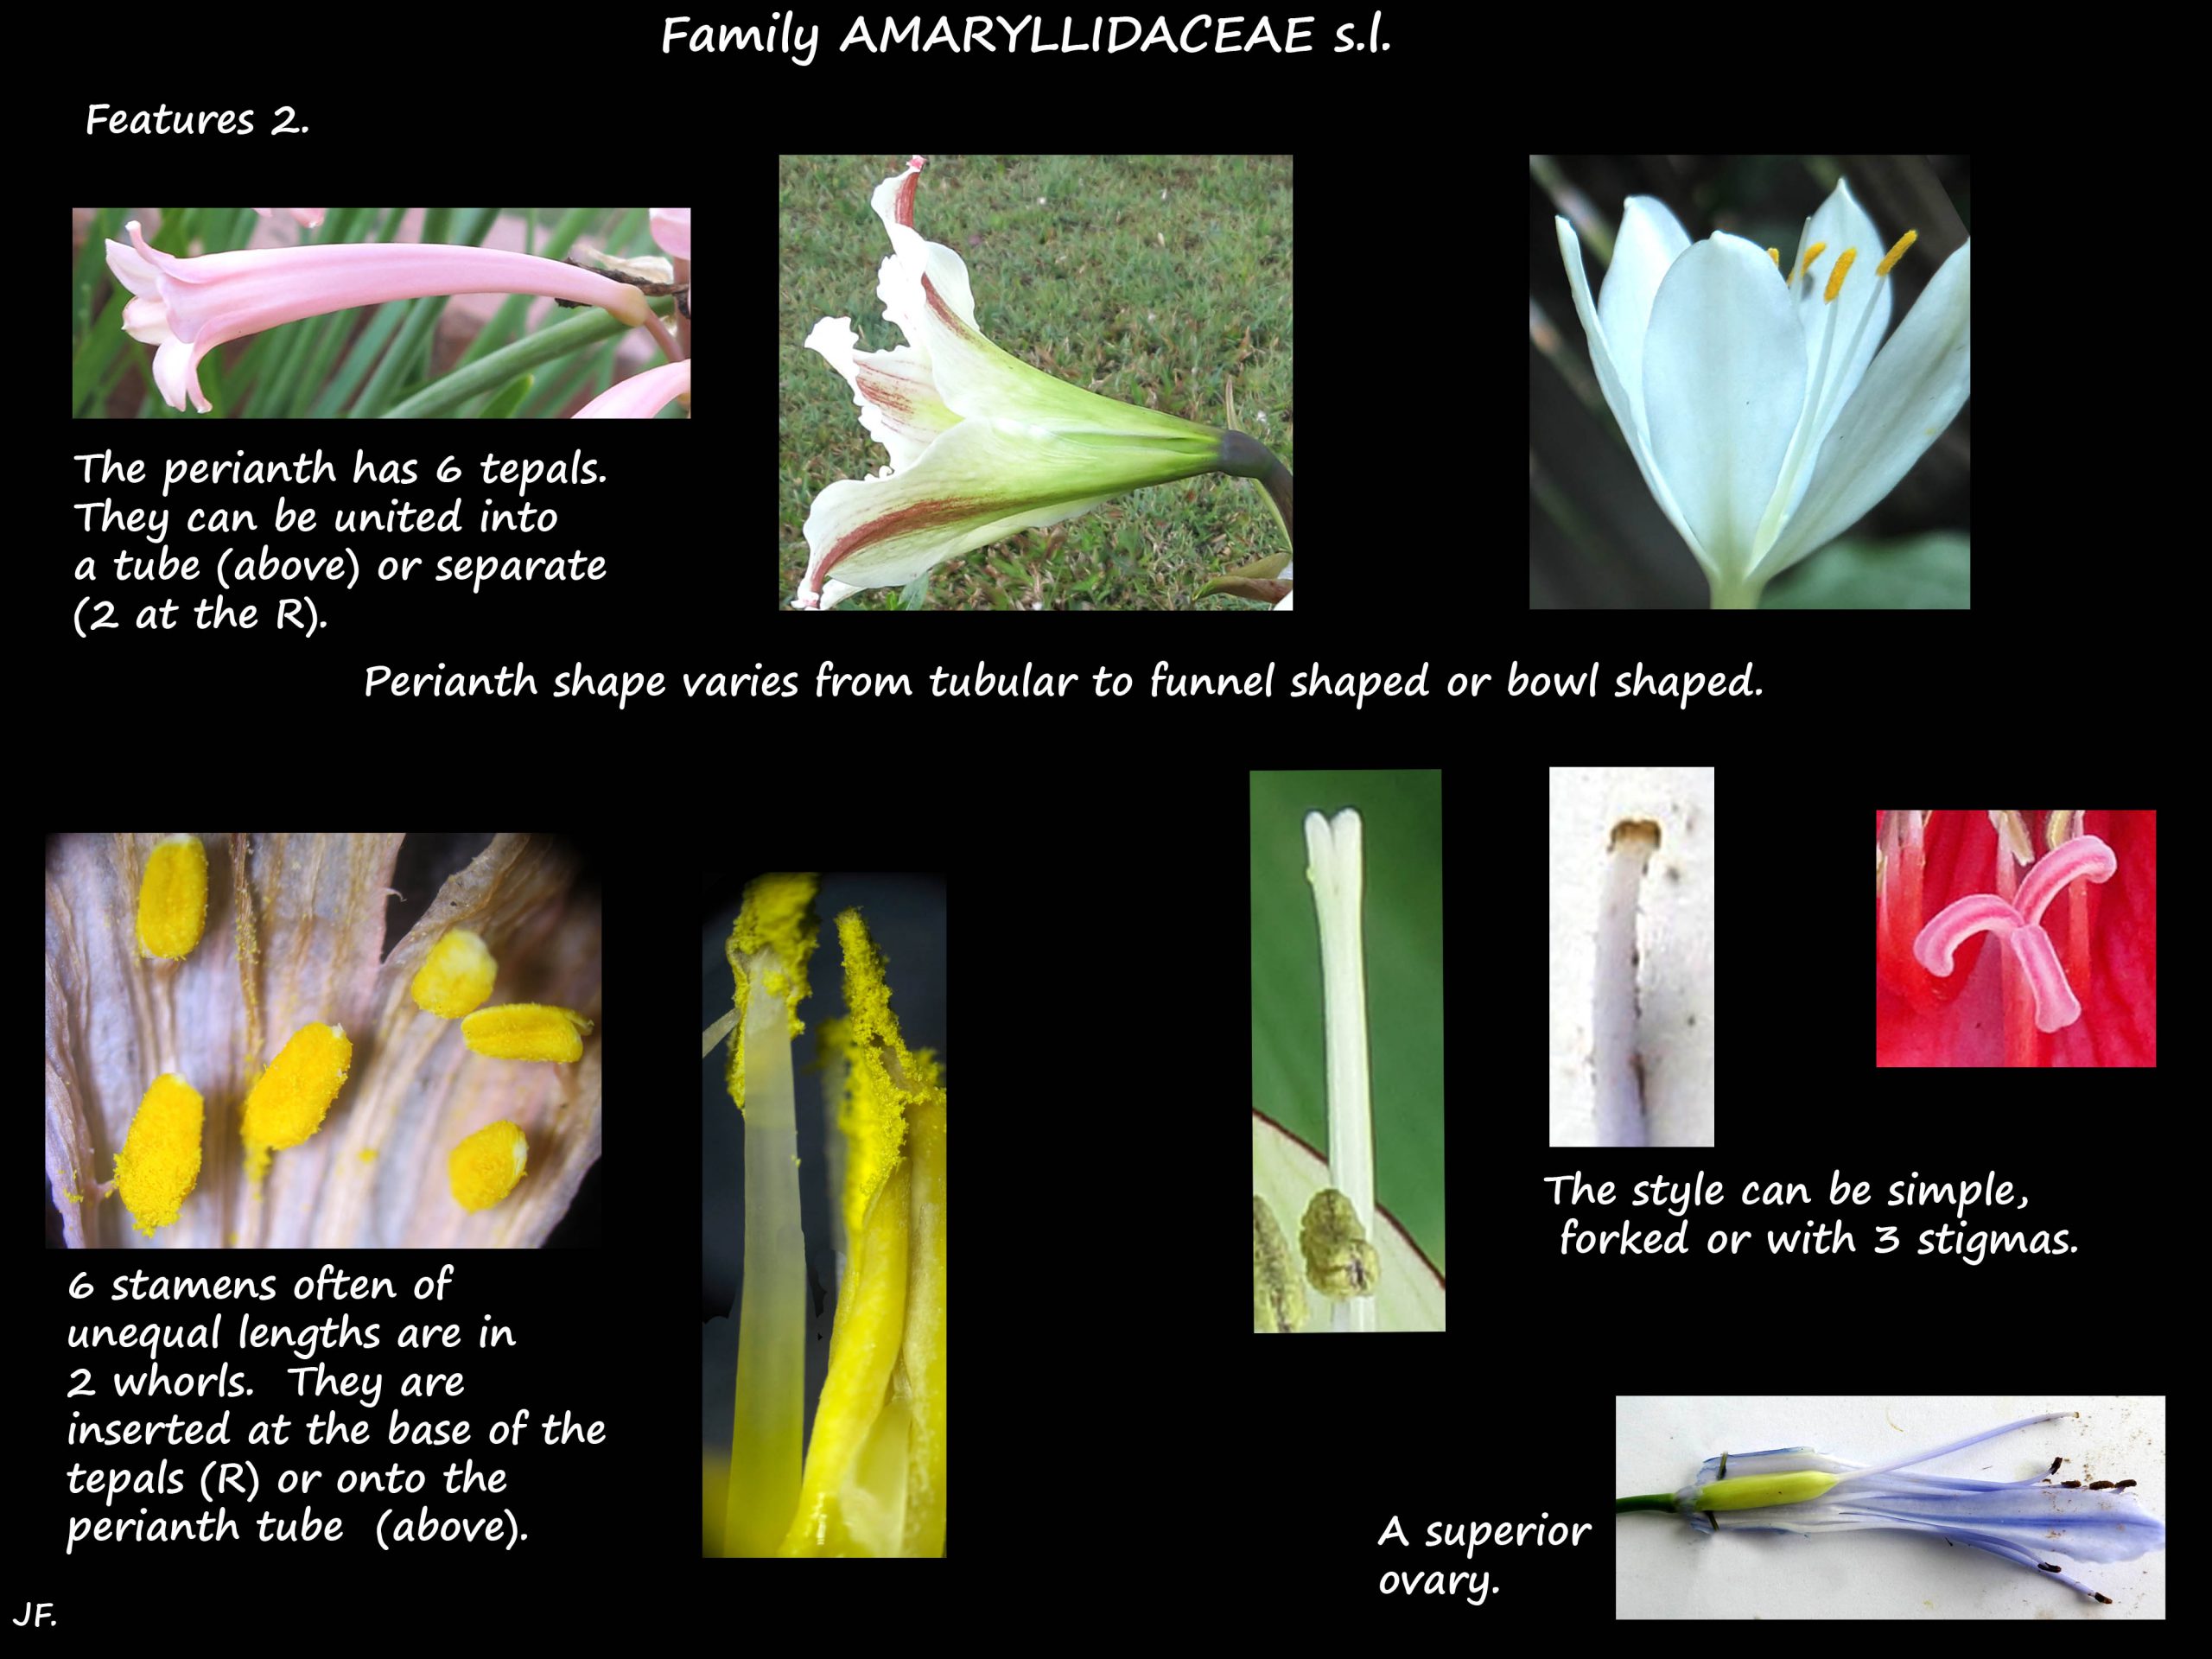 2 Amaryllidaceae flowers